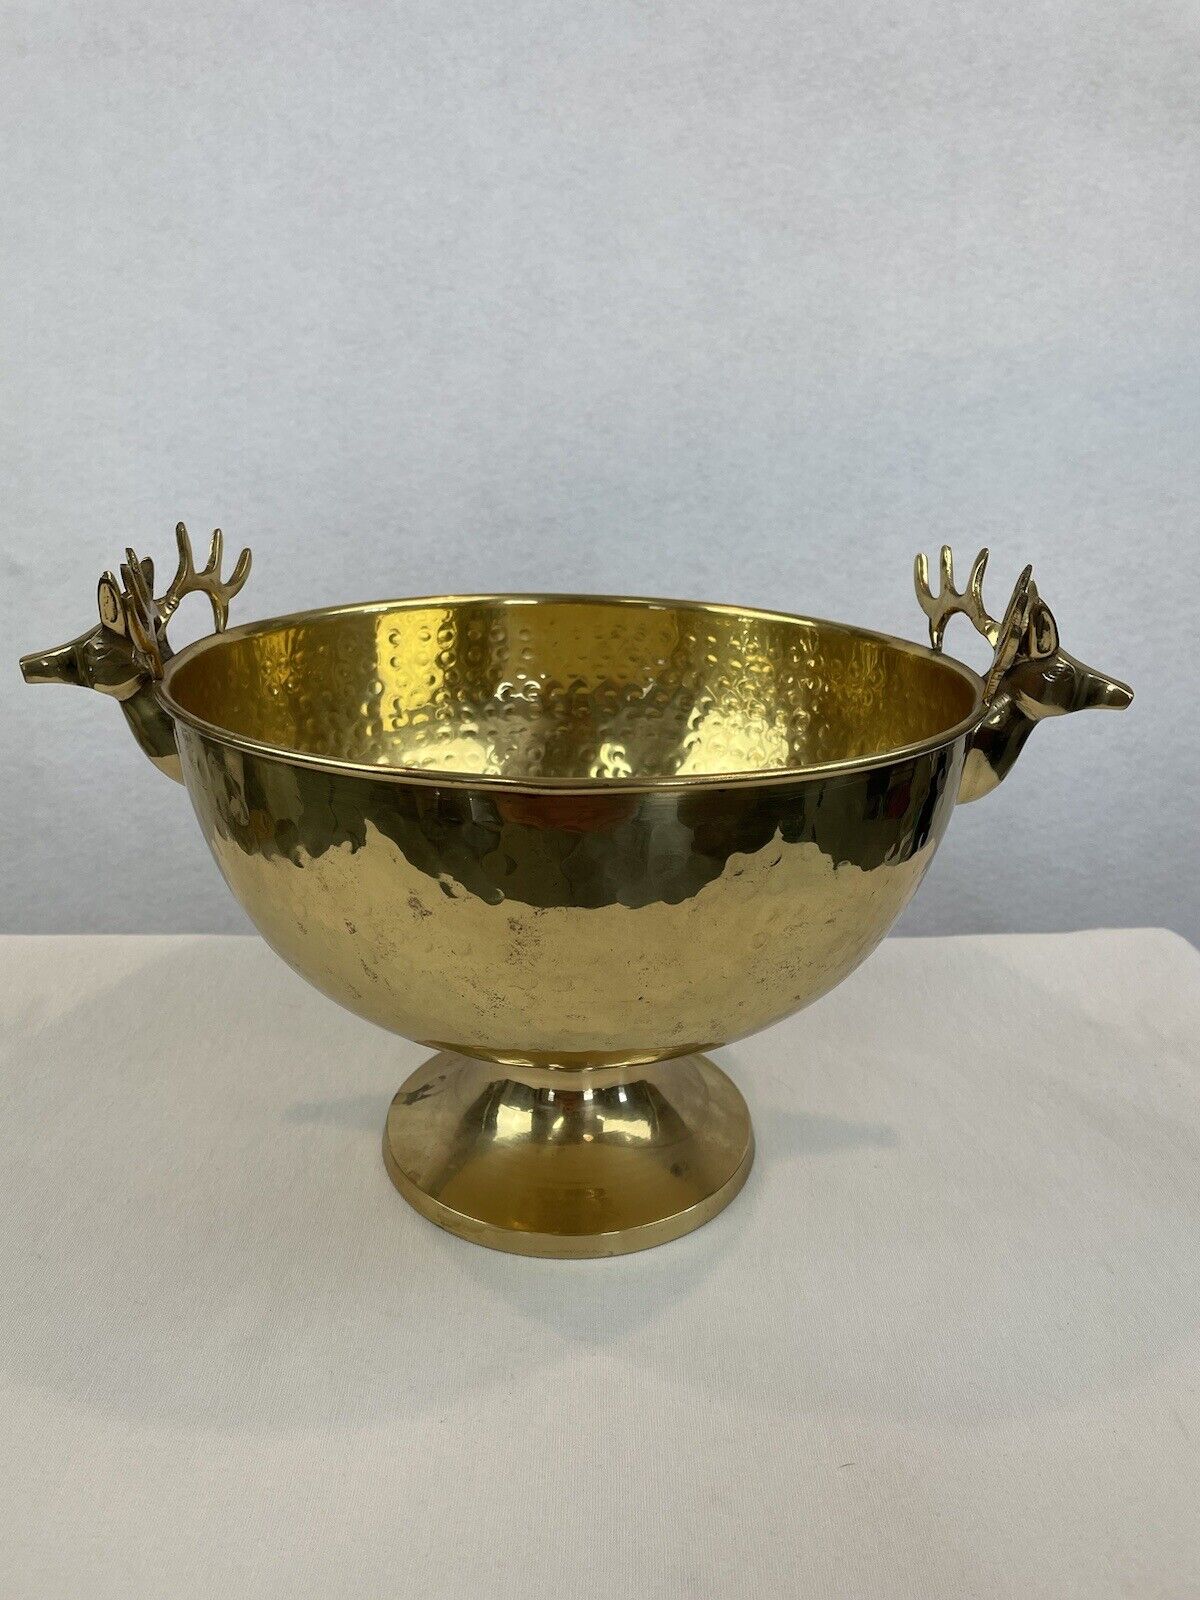 Vintage Brass Round Pedestal Bowl Deer Buck Stag Reindeer Head Antlers Handles